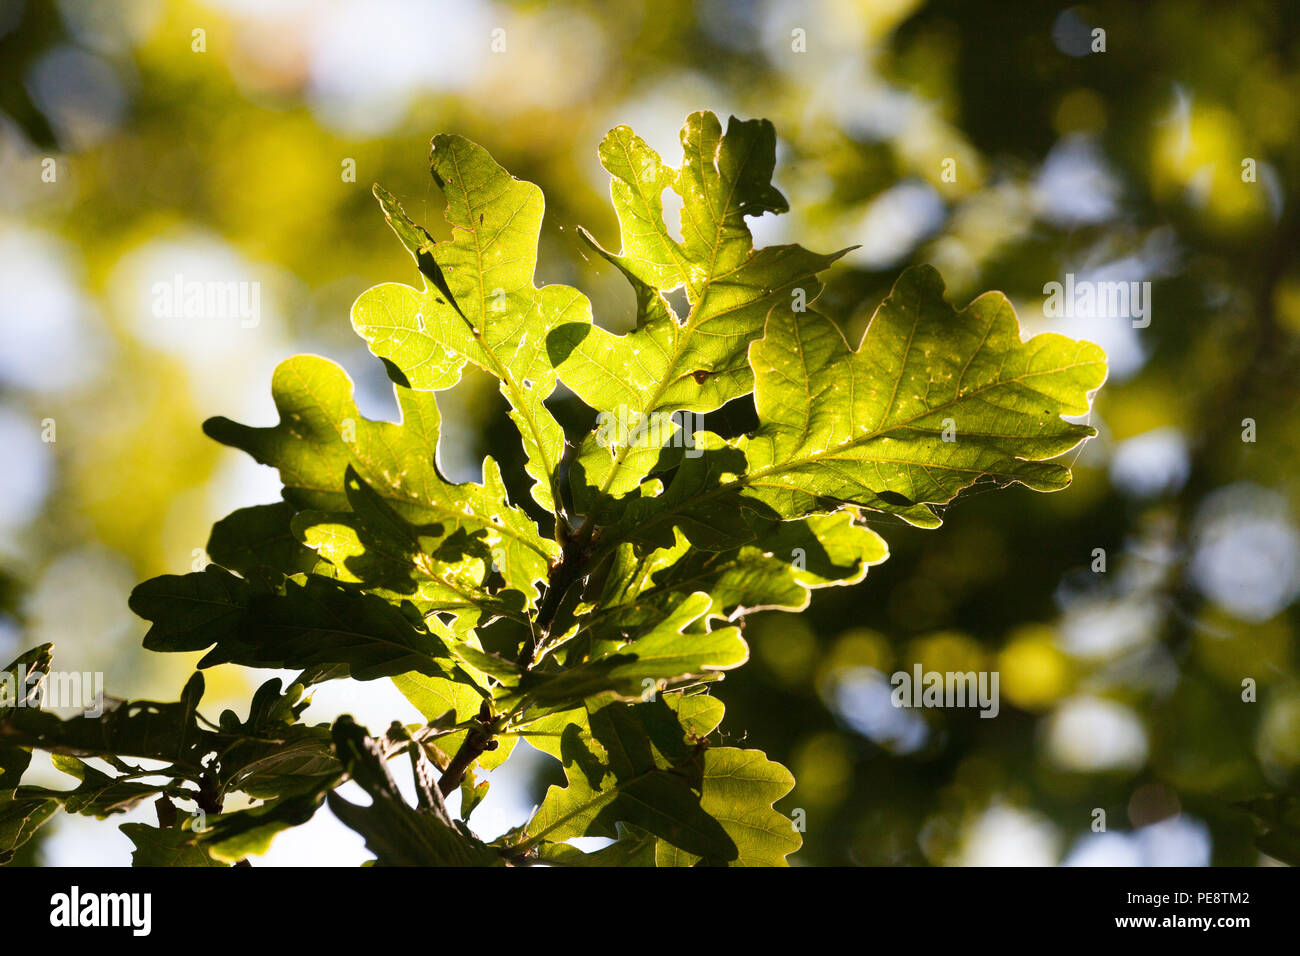 Eiche (Quercus robur) von inscts/wirbellosen Tieren gefressen, wichtige Baum, Lila Kaiser Schmetterlinge und Lila Hairstreaks. Baum zieht die grösste Anzahl von Insekten in Großbritannien - ca. 350 Stockfoto